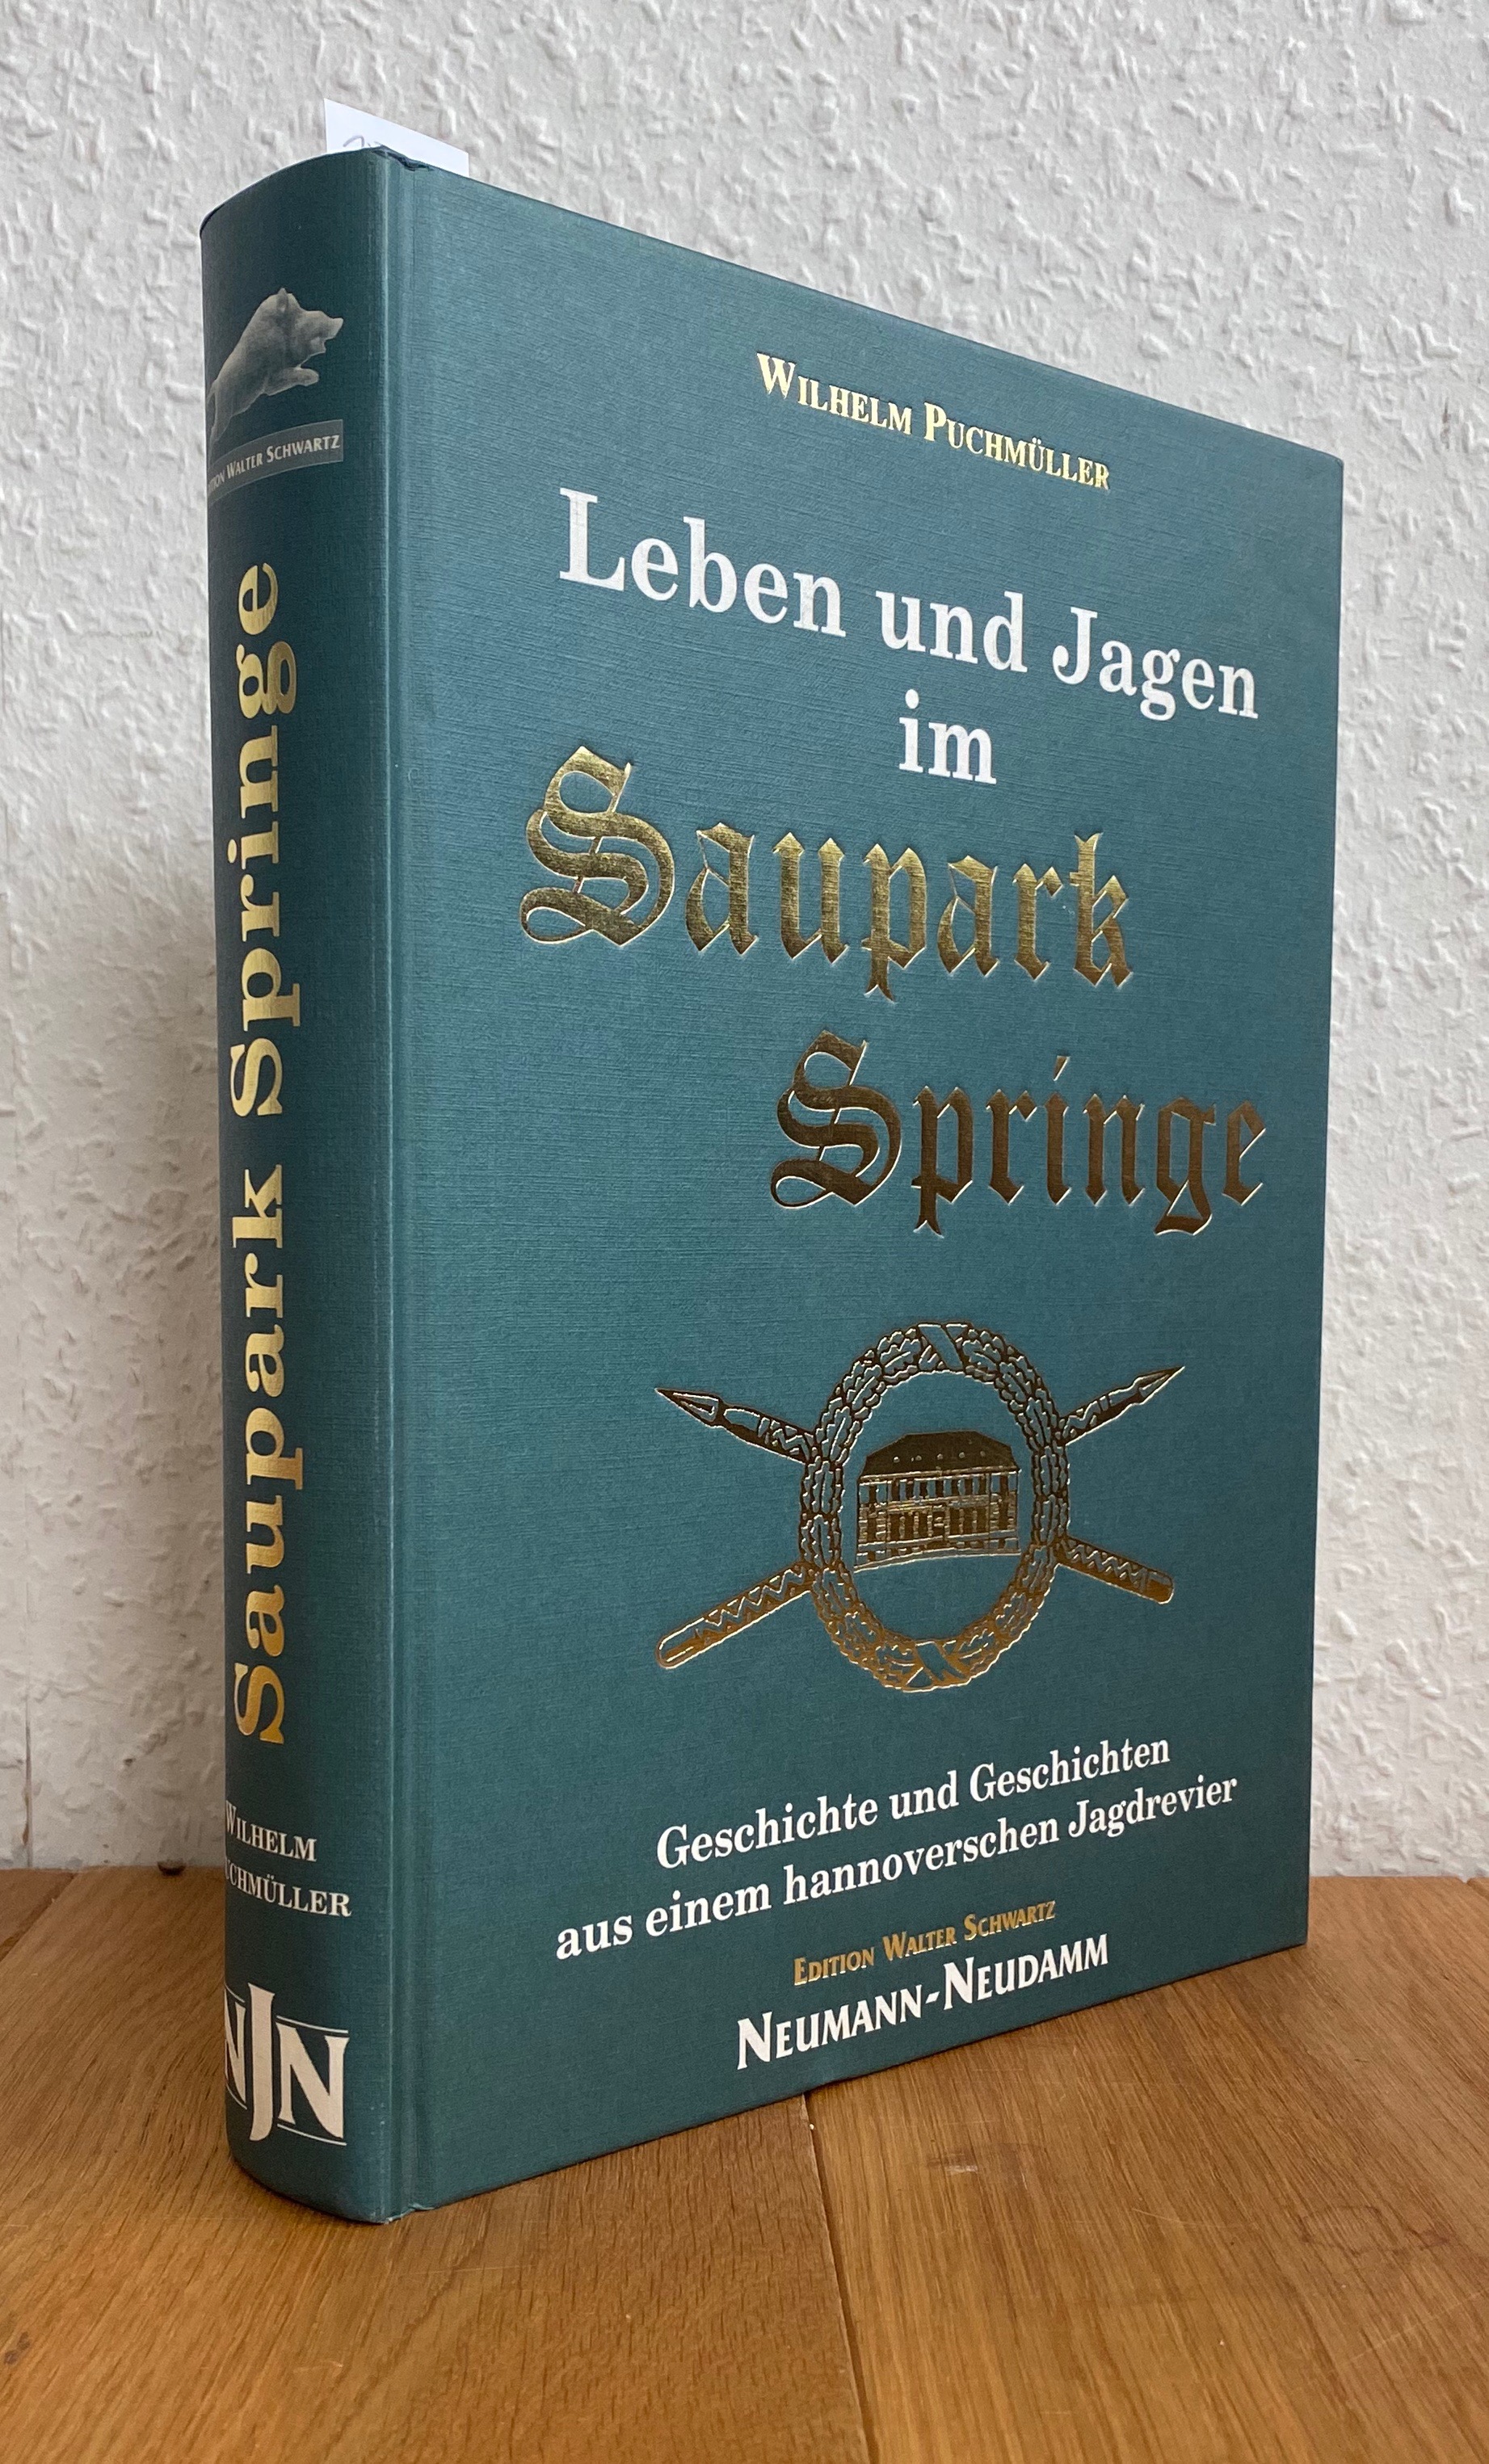 Leben und Jagen im Saupark Springe. Geschichte und Geschichten aus einem hannoverschen Jagdrevier. - Puchmüller, Wilhelm